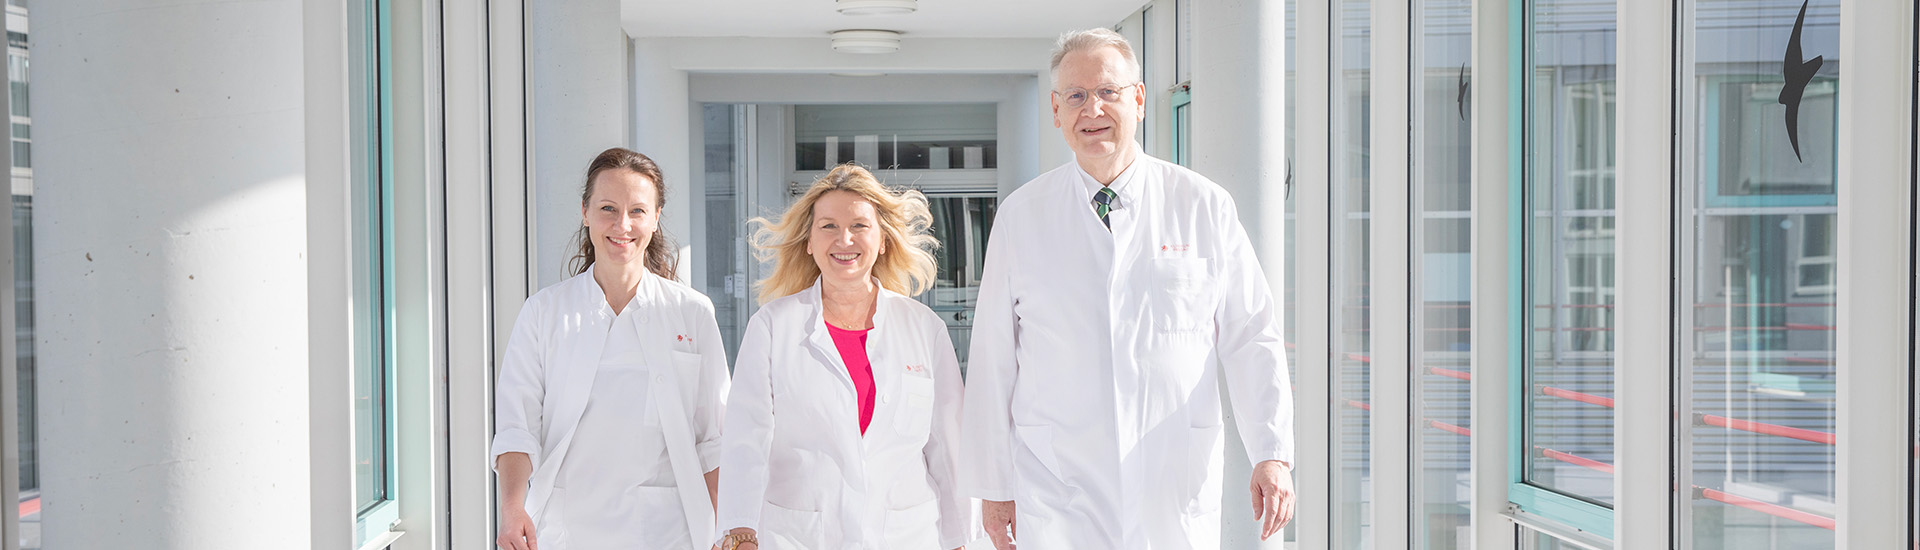 Drei Ärzte des Brustzentrums Passau gehen am Flur entlang